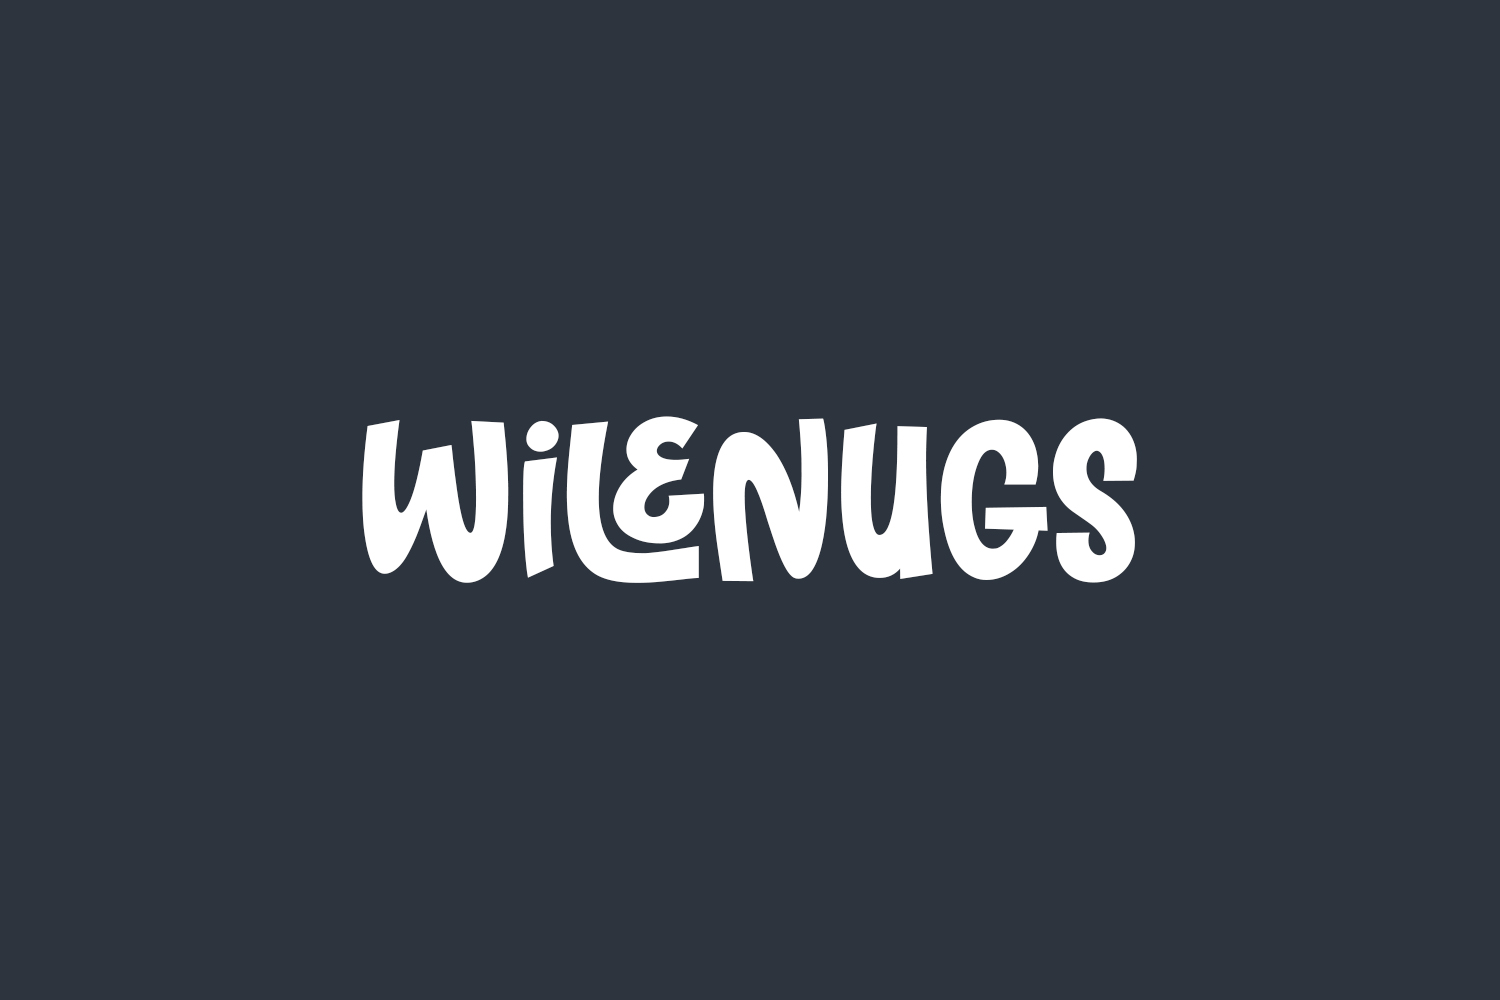 Wilenugs Free Font